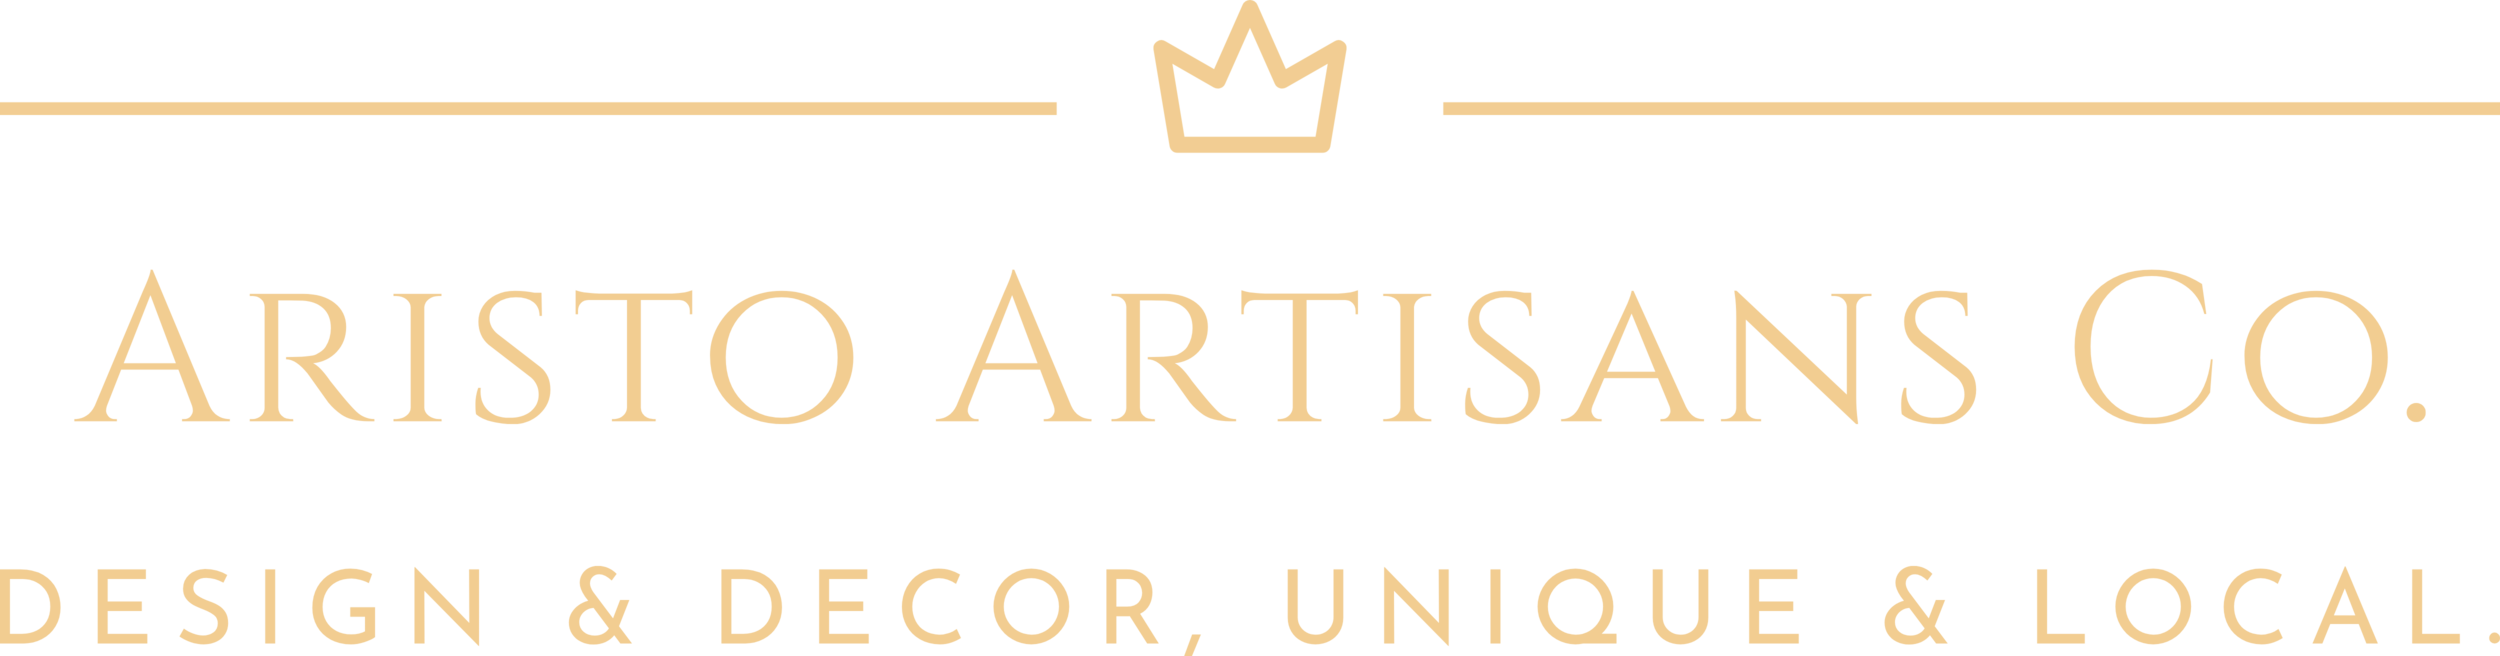 Aristo Artisans Co.